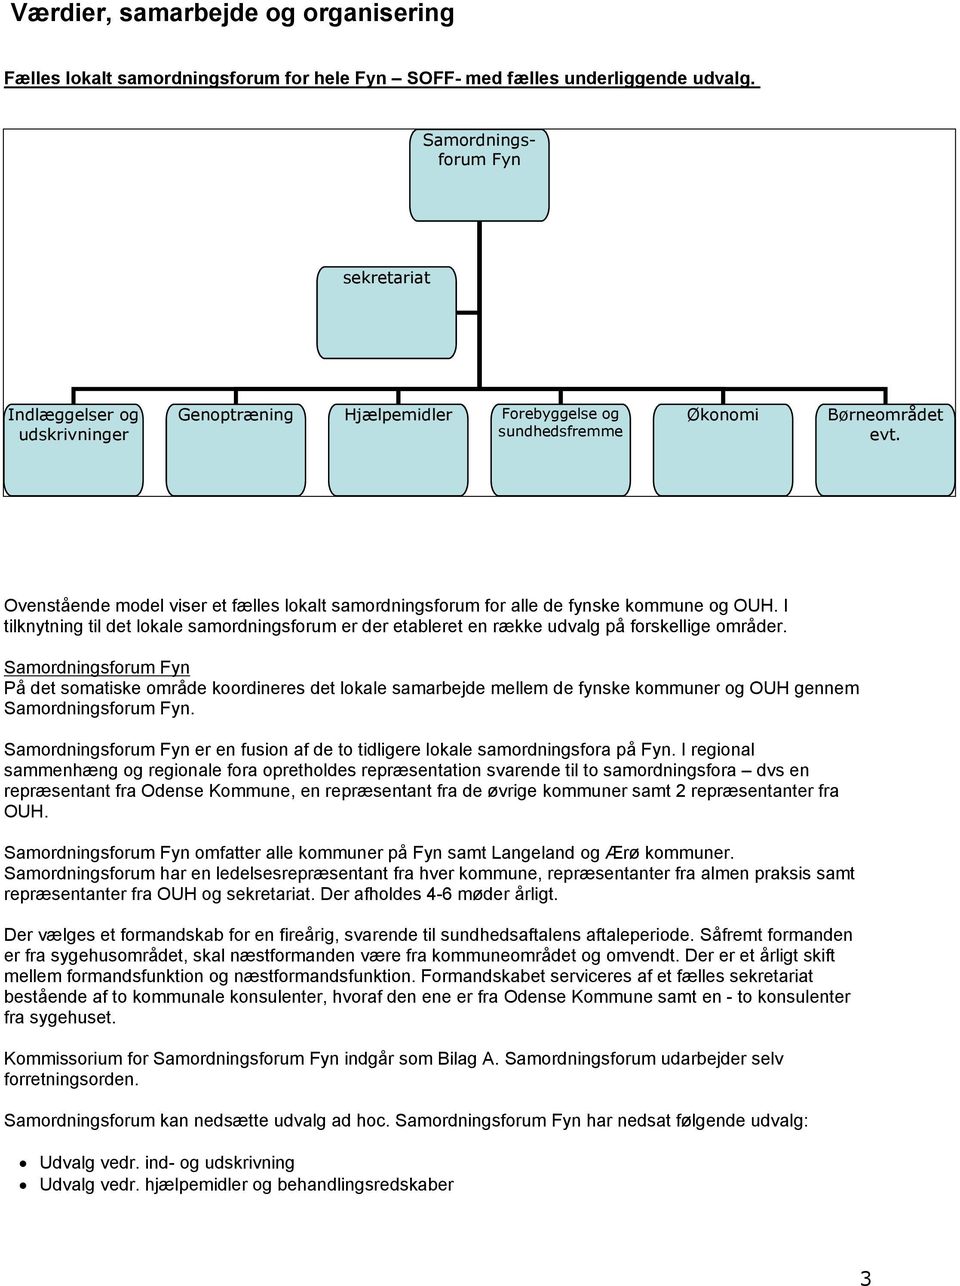 Ovenstående model viser et fælles lokalt samordningsforum for alle de fynske kommune og OUH. I tilknytning til det lokale samordningsforum er der etableret en række udvalg på forskellige områder.